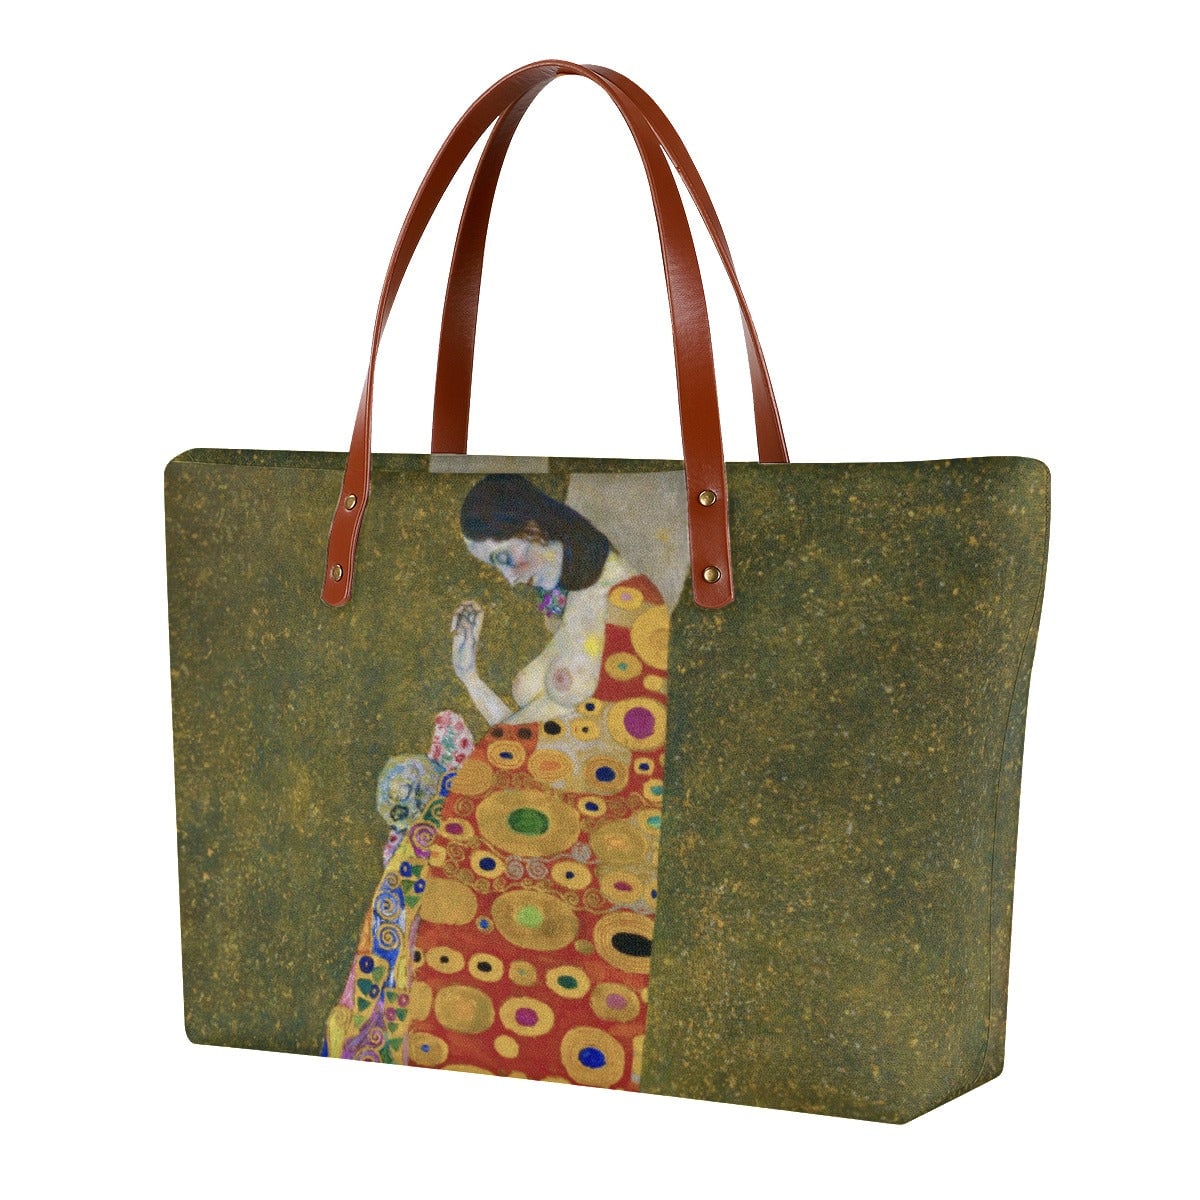 Hope II by Gustav Klimt Painting Waterproof Tote Bag